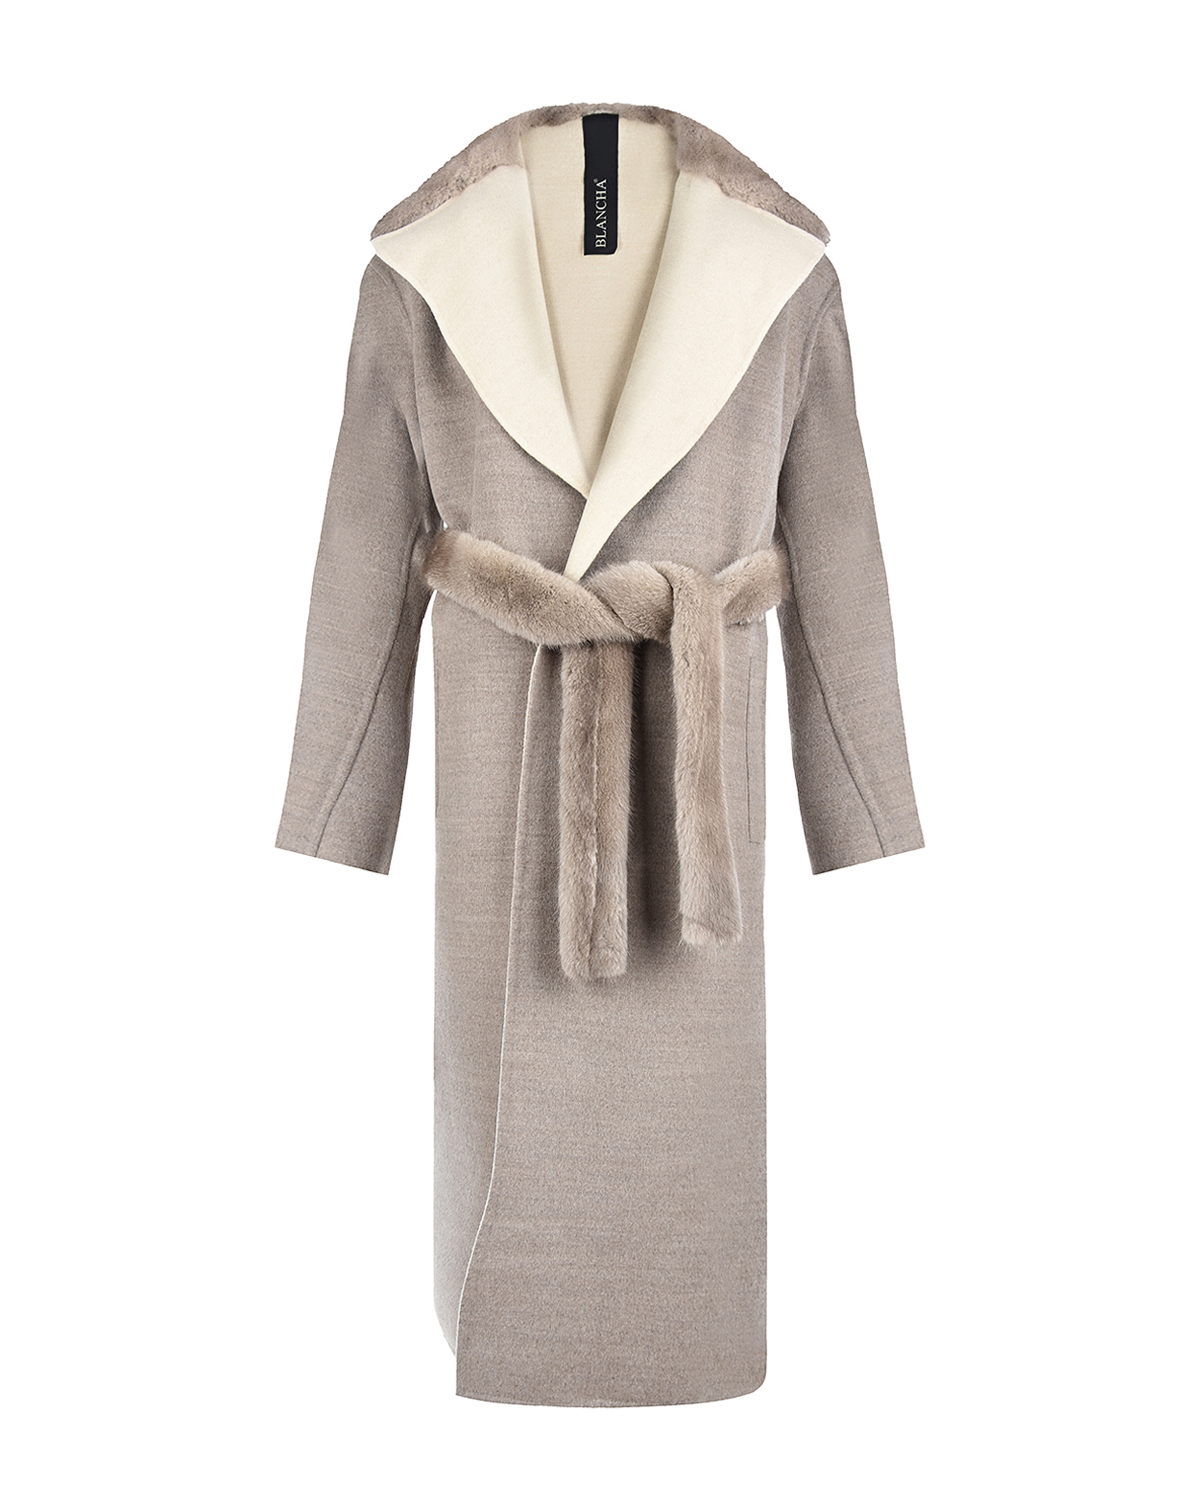 Двухсторонее пальто из шерсти и меха норки Blancha, размер 44, цвет бежевый